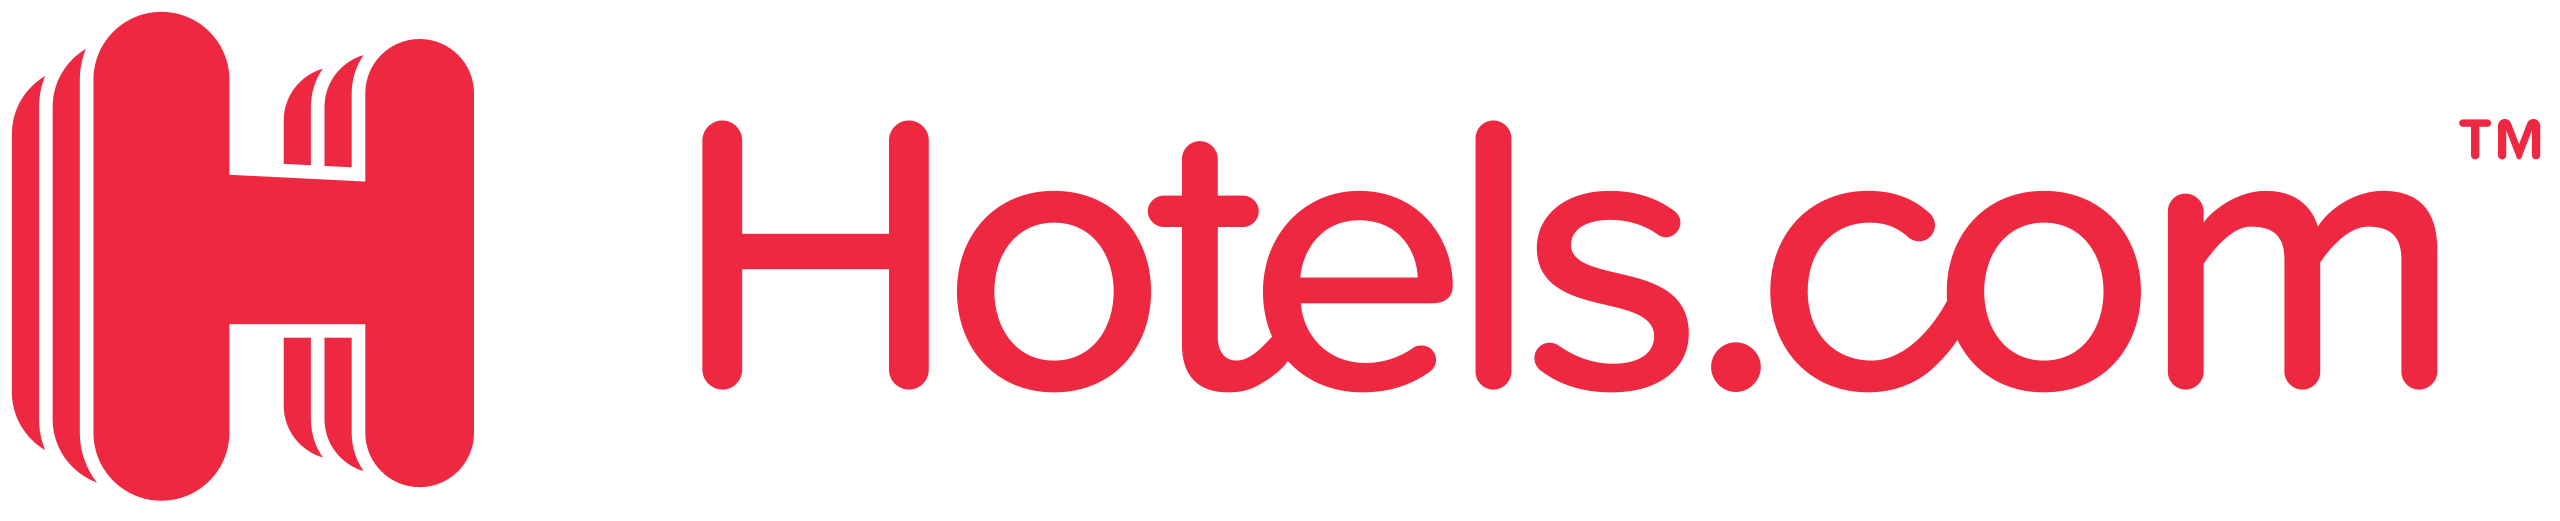 2560px-Hotels.com_logo